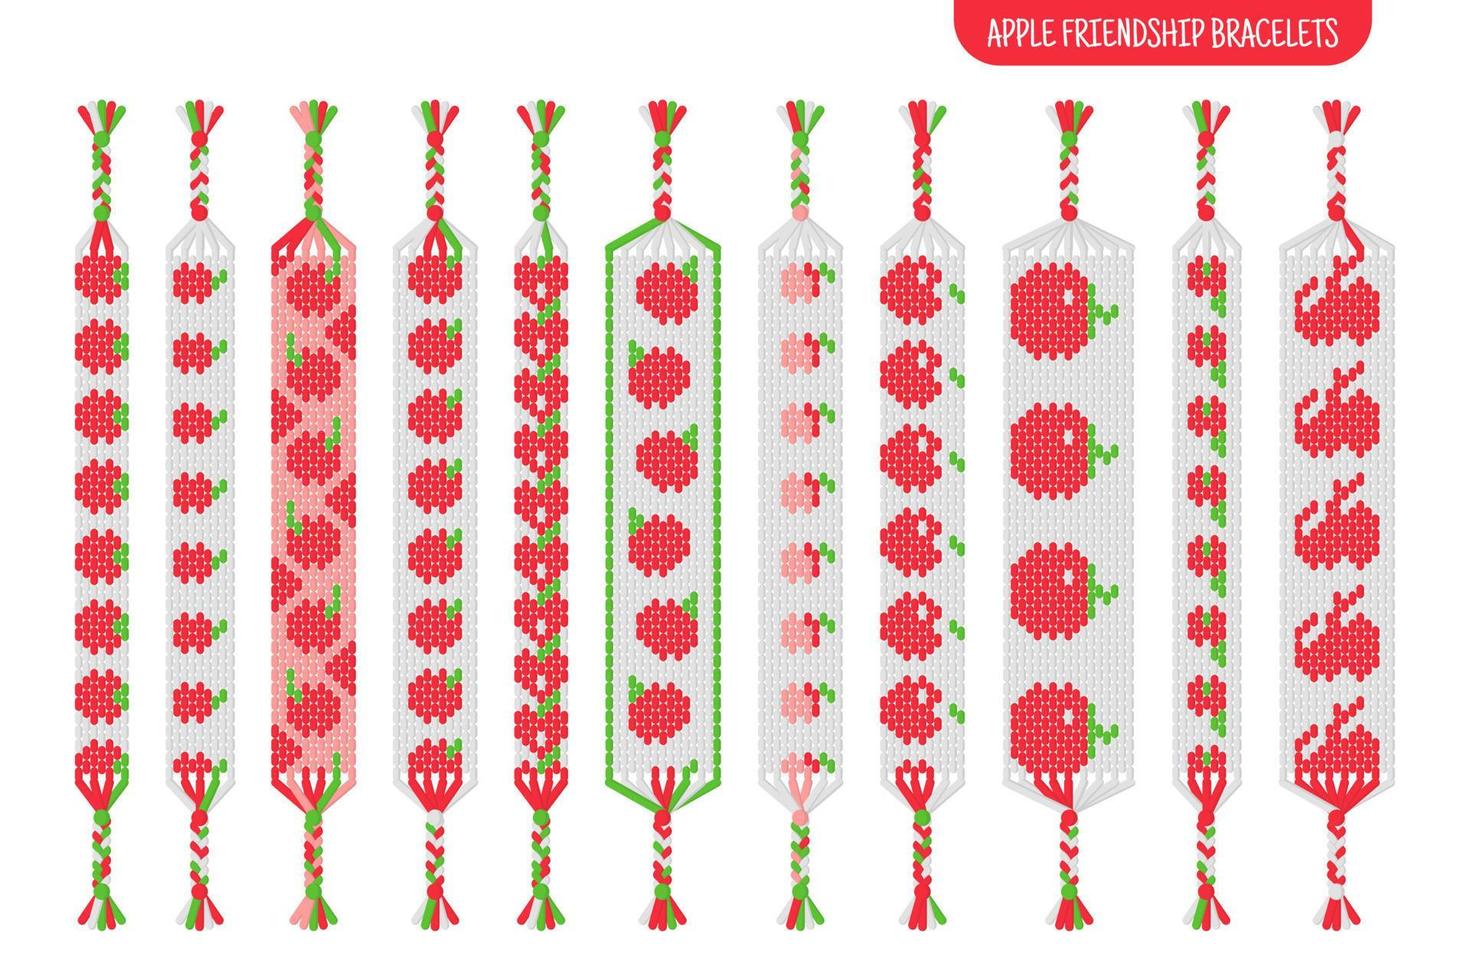 conjunto de pulseiras de amizade artesanal de maçã vermelha de fios ou miçangas. tutorial de padrão normal de macramê. vetor